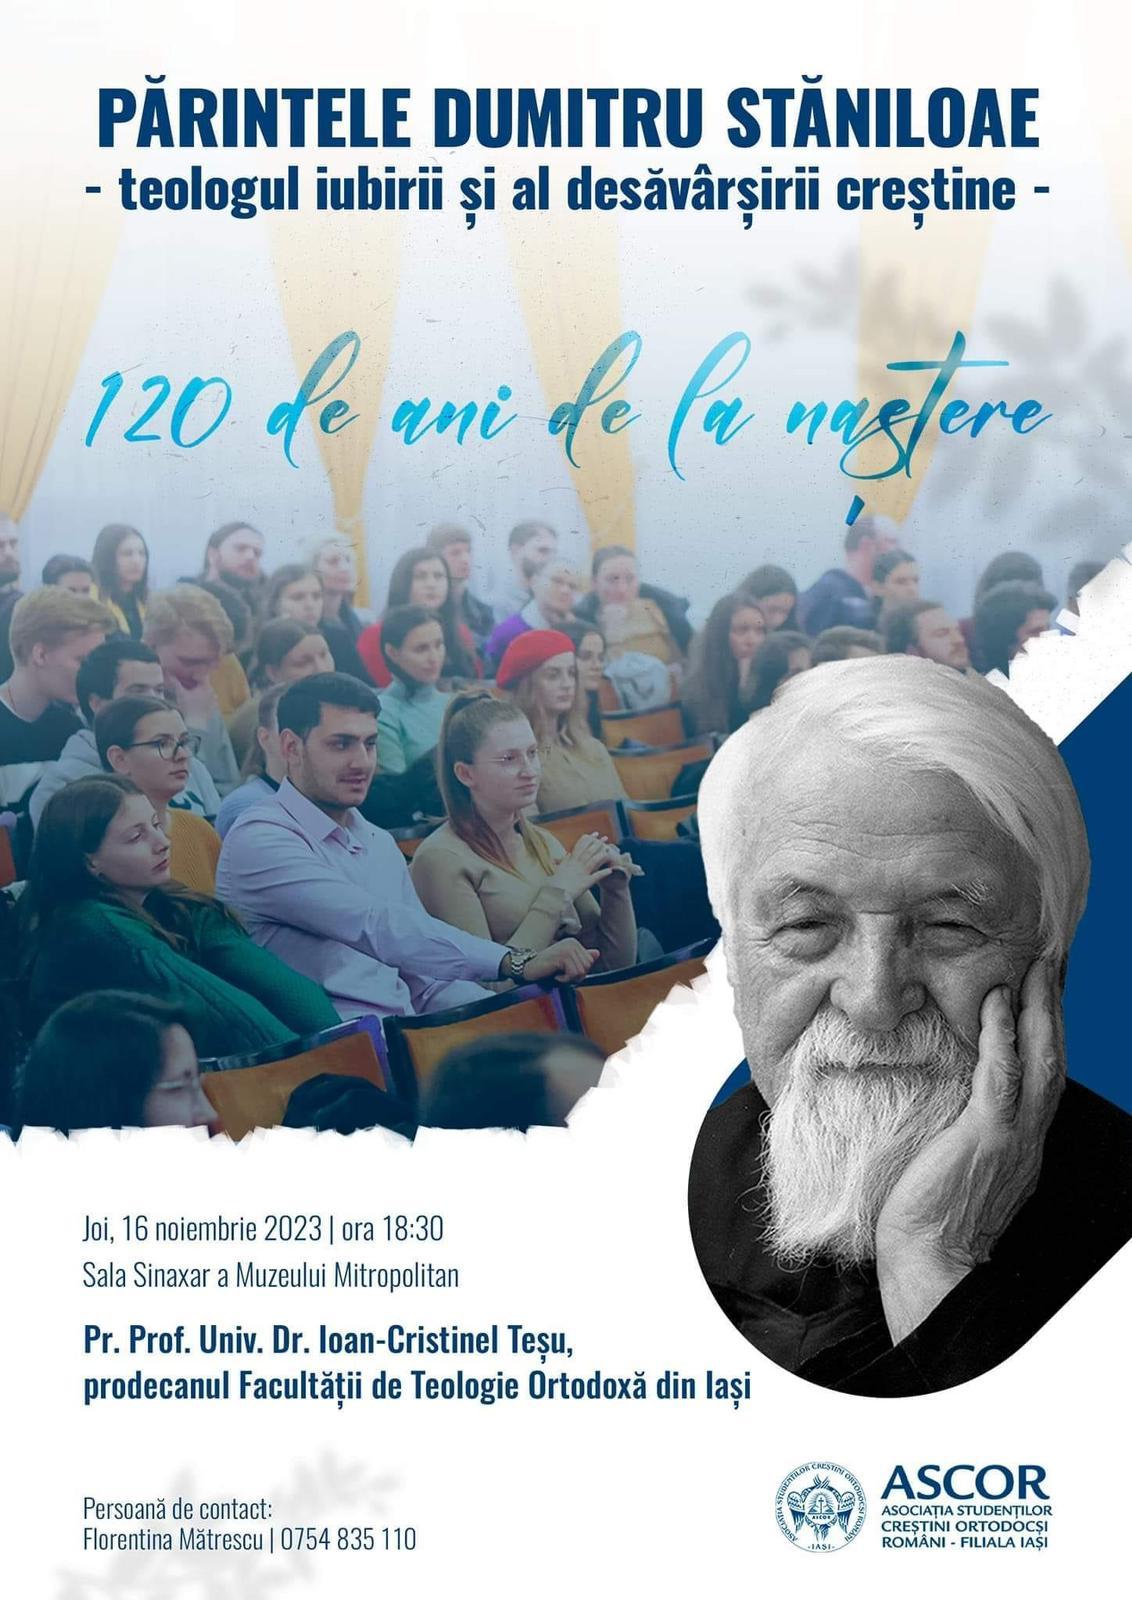 Cum cinstesc împlinirea a 120 de ani de la  nașterea părintelui Dumitru Stăniloae tinerii din Iași?